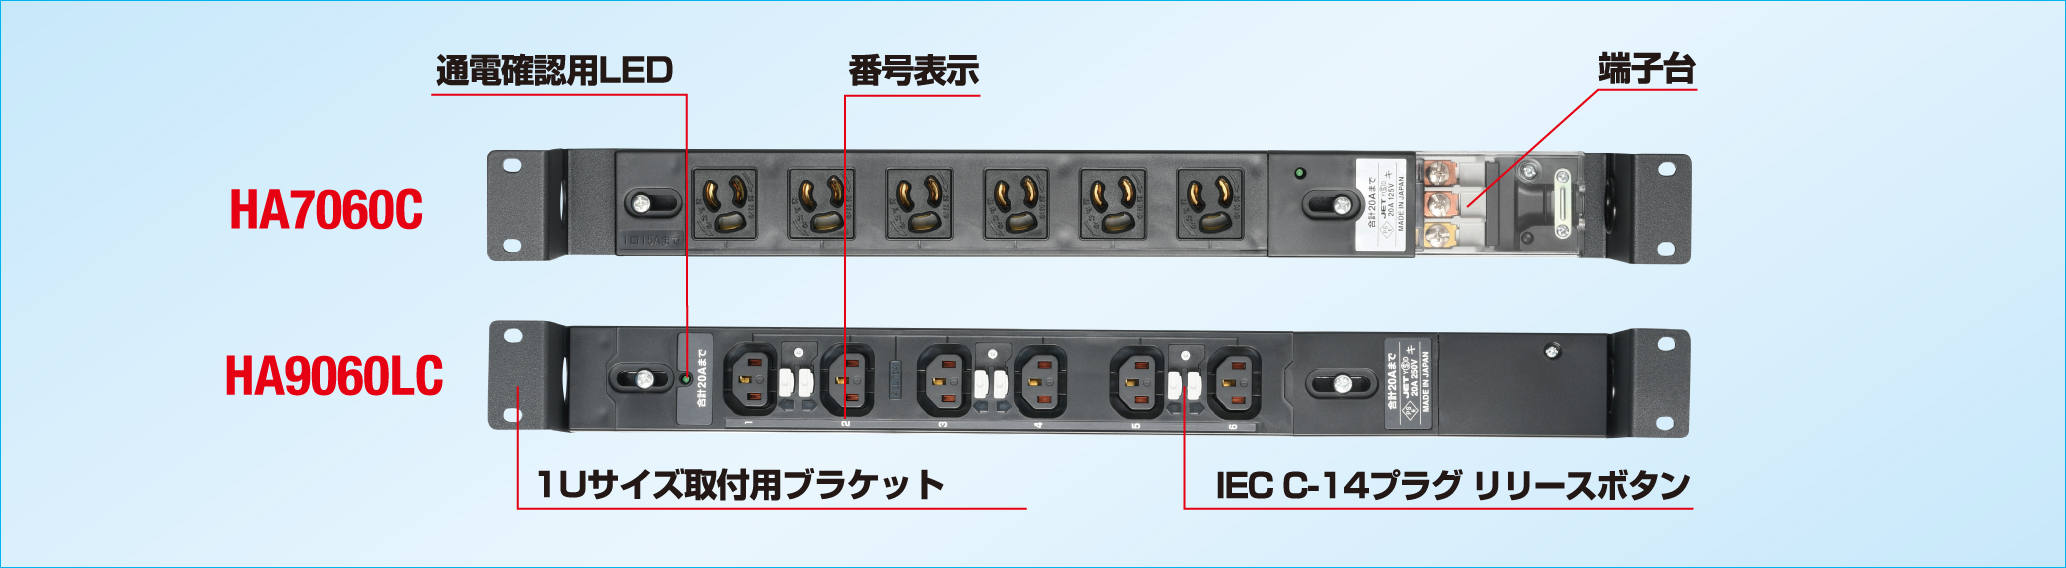 1Uコンセントバー 20A入力 コンパクトタイプ 抜止形/IEC C-13